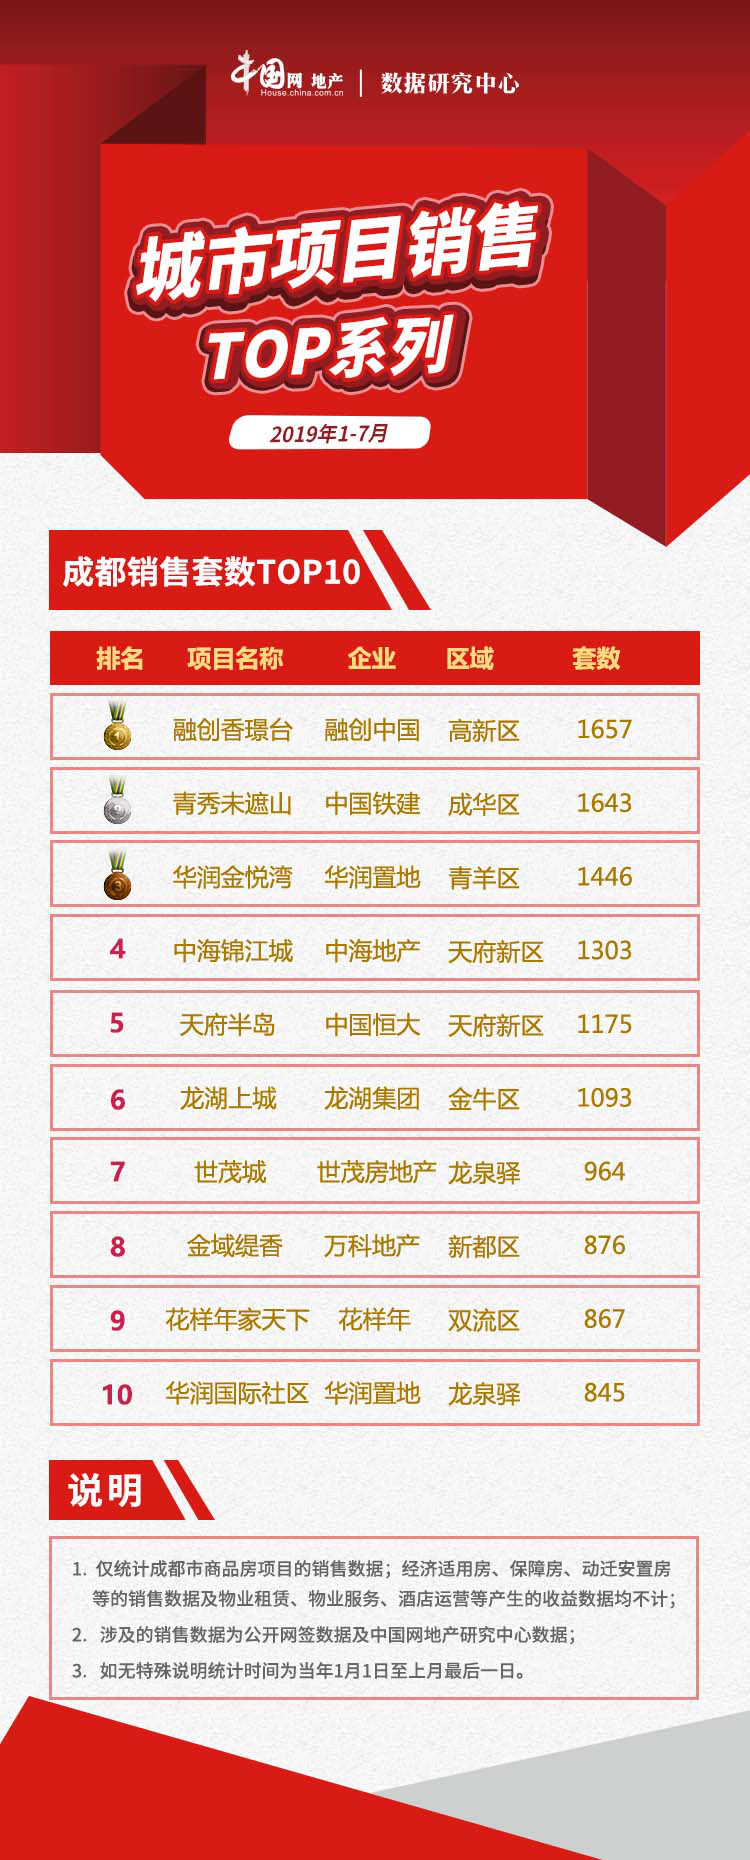 2019年1-7月成都项目销售TOP10  推盘量不足，断供僵局难破-中国网地产